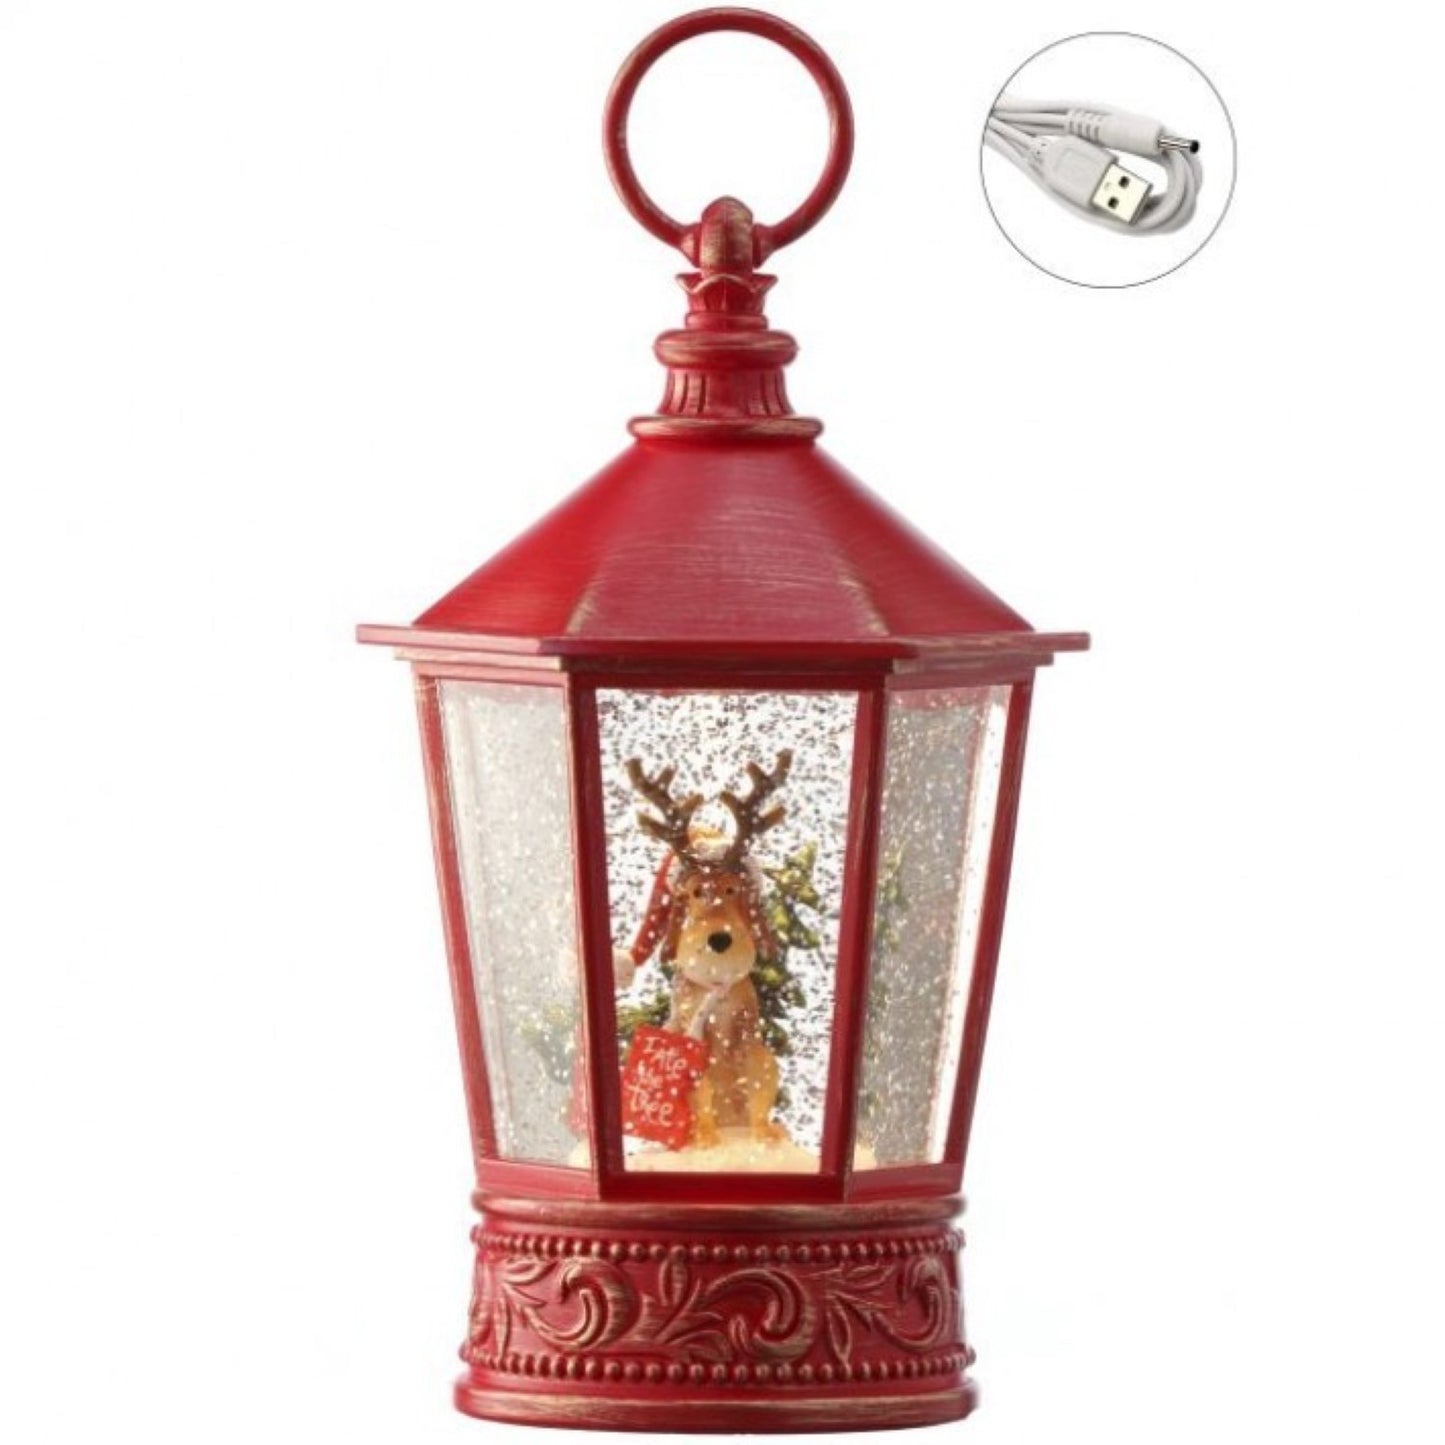 Regency International 10"LED/Battery/Timer/USB Reindeer Lantern Globe